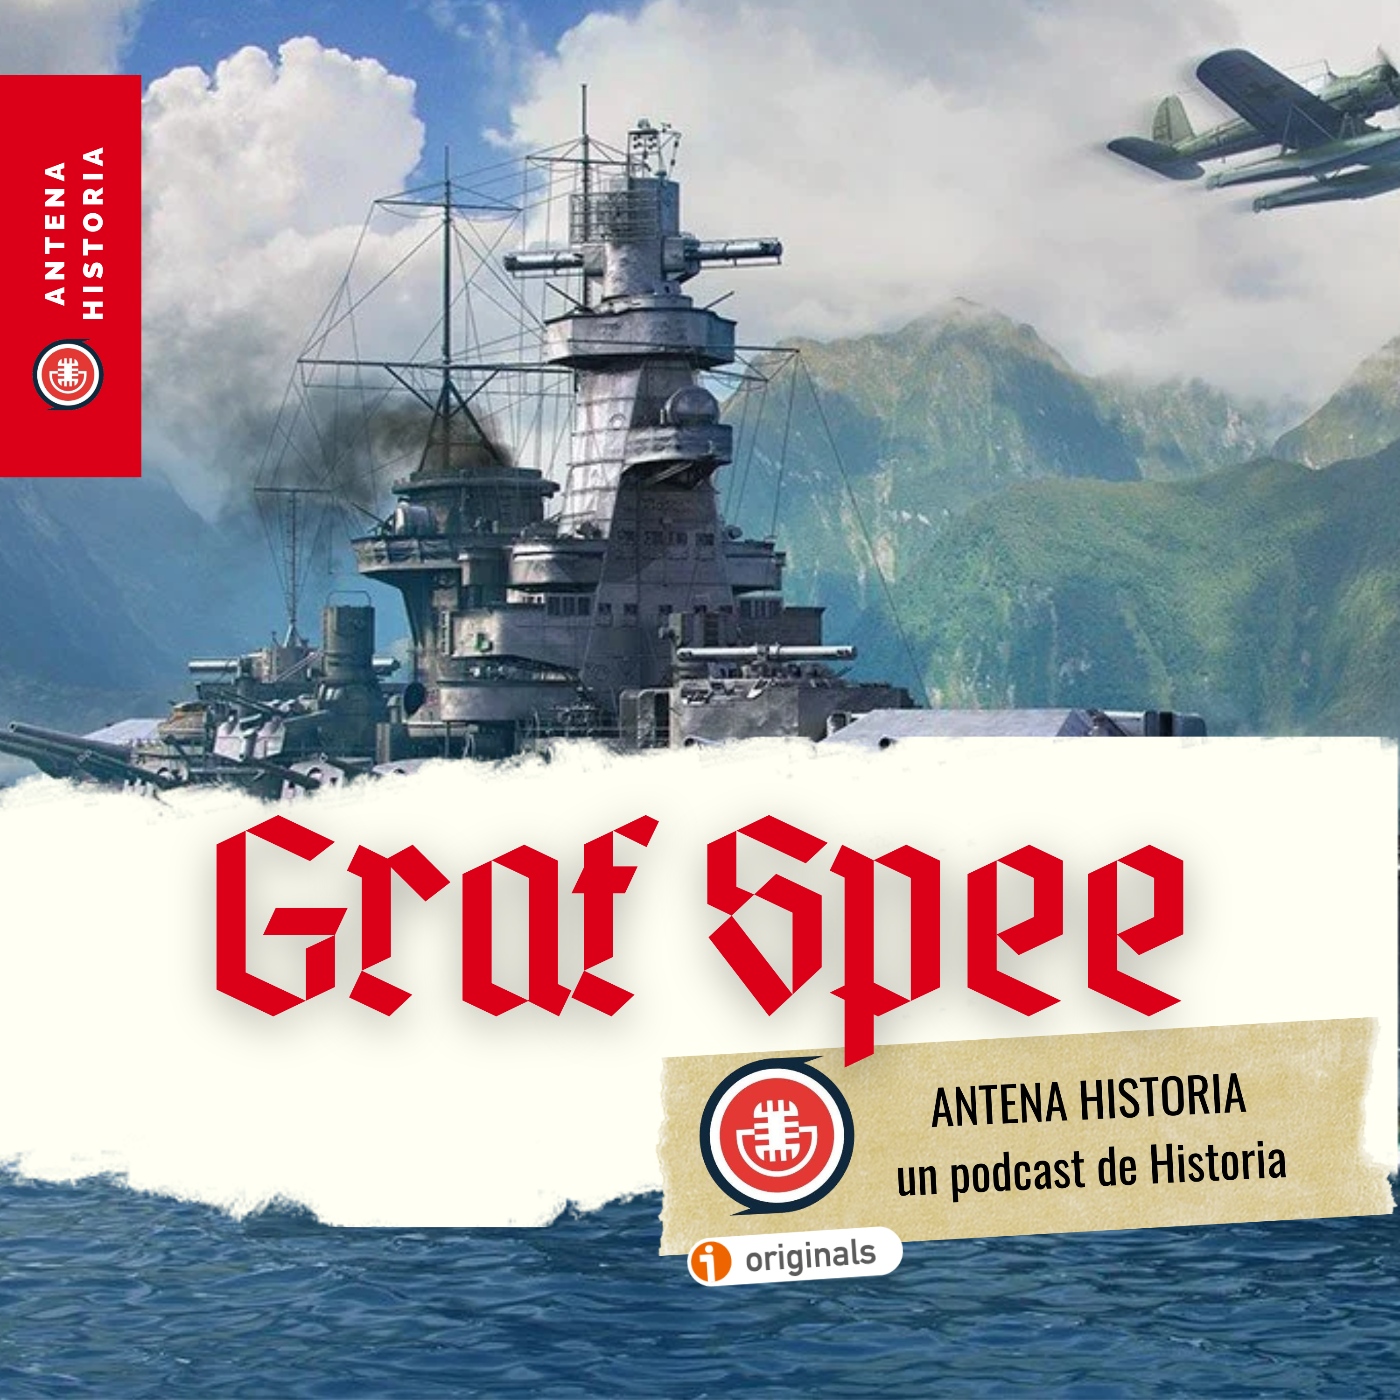 El Graf Spee: El famoso acorazado de bolsillo de la Segunda Guerra Mundial  - Antena Historia - Podcast en iVoox